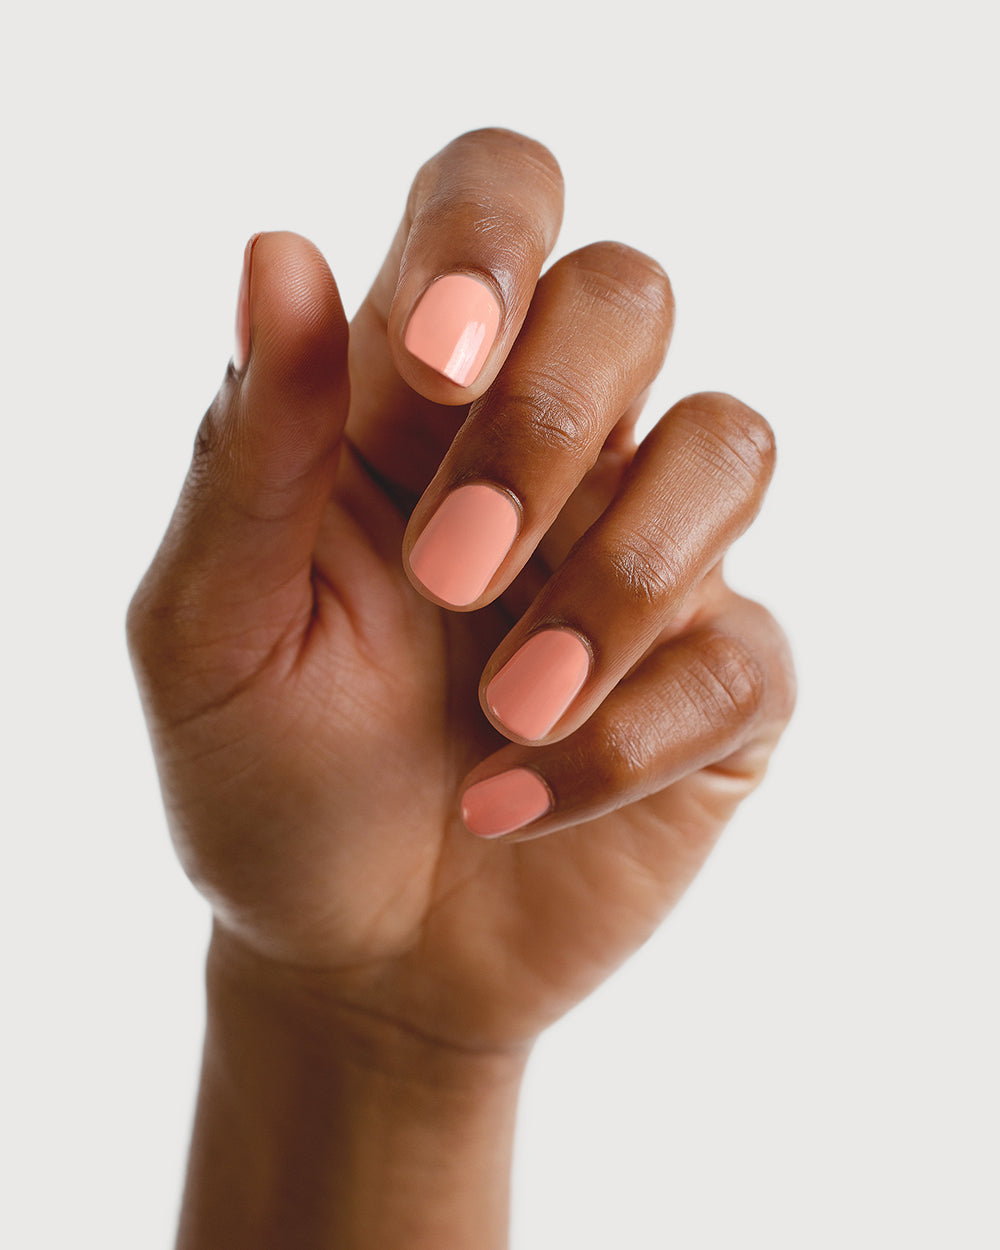 peach blush nail polish hand swatch on medium skin tone